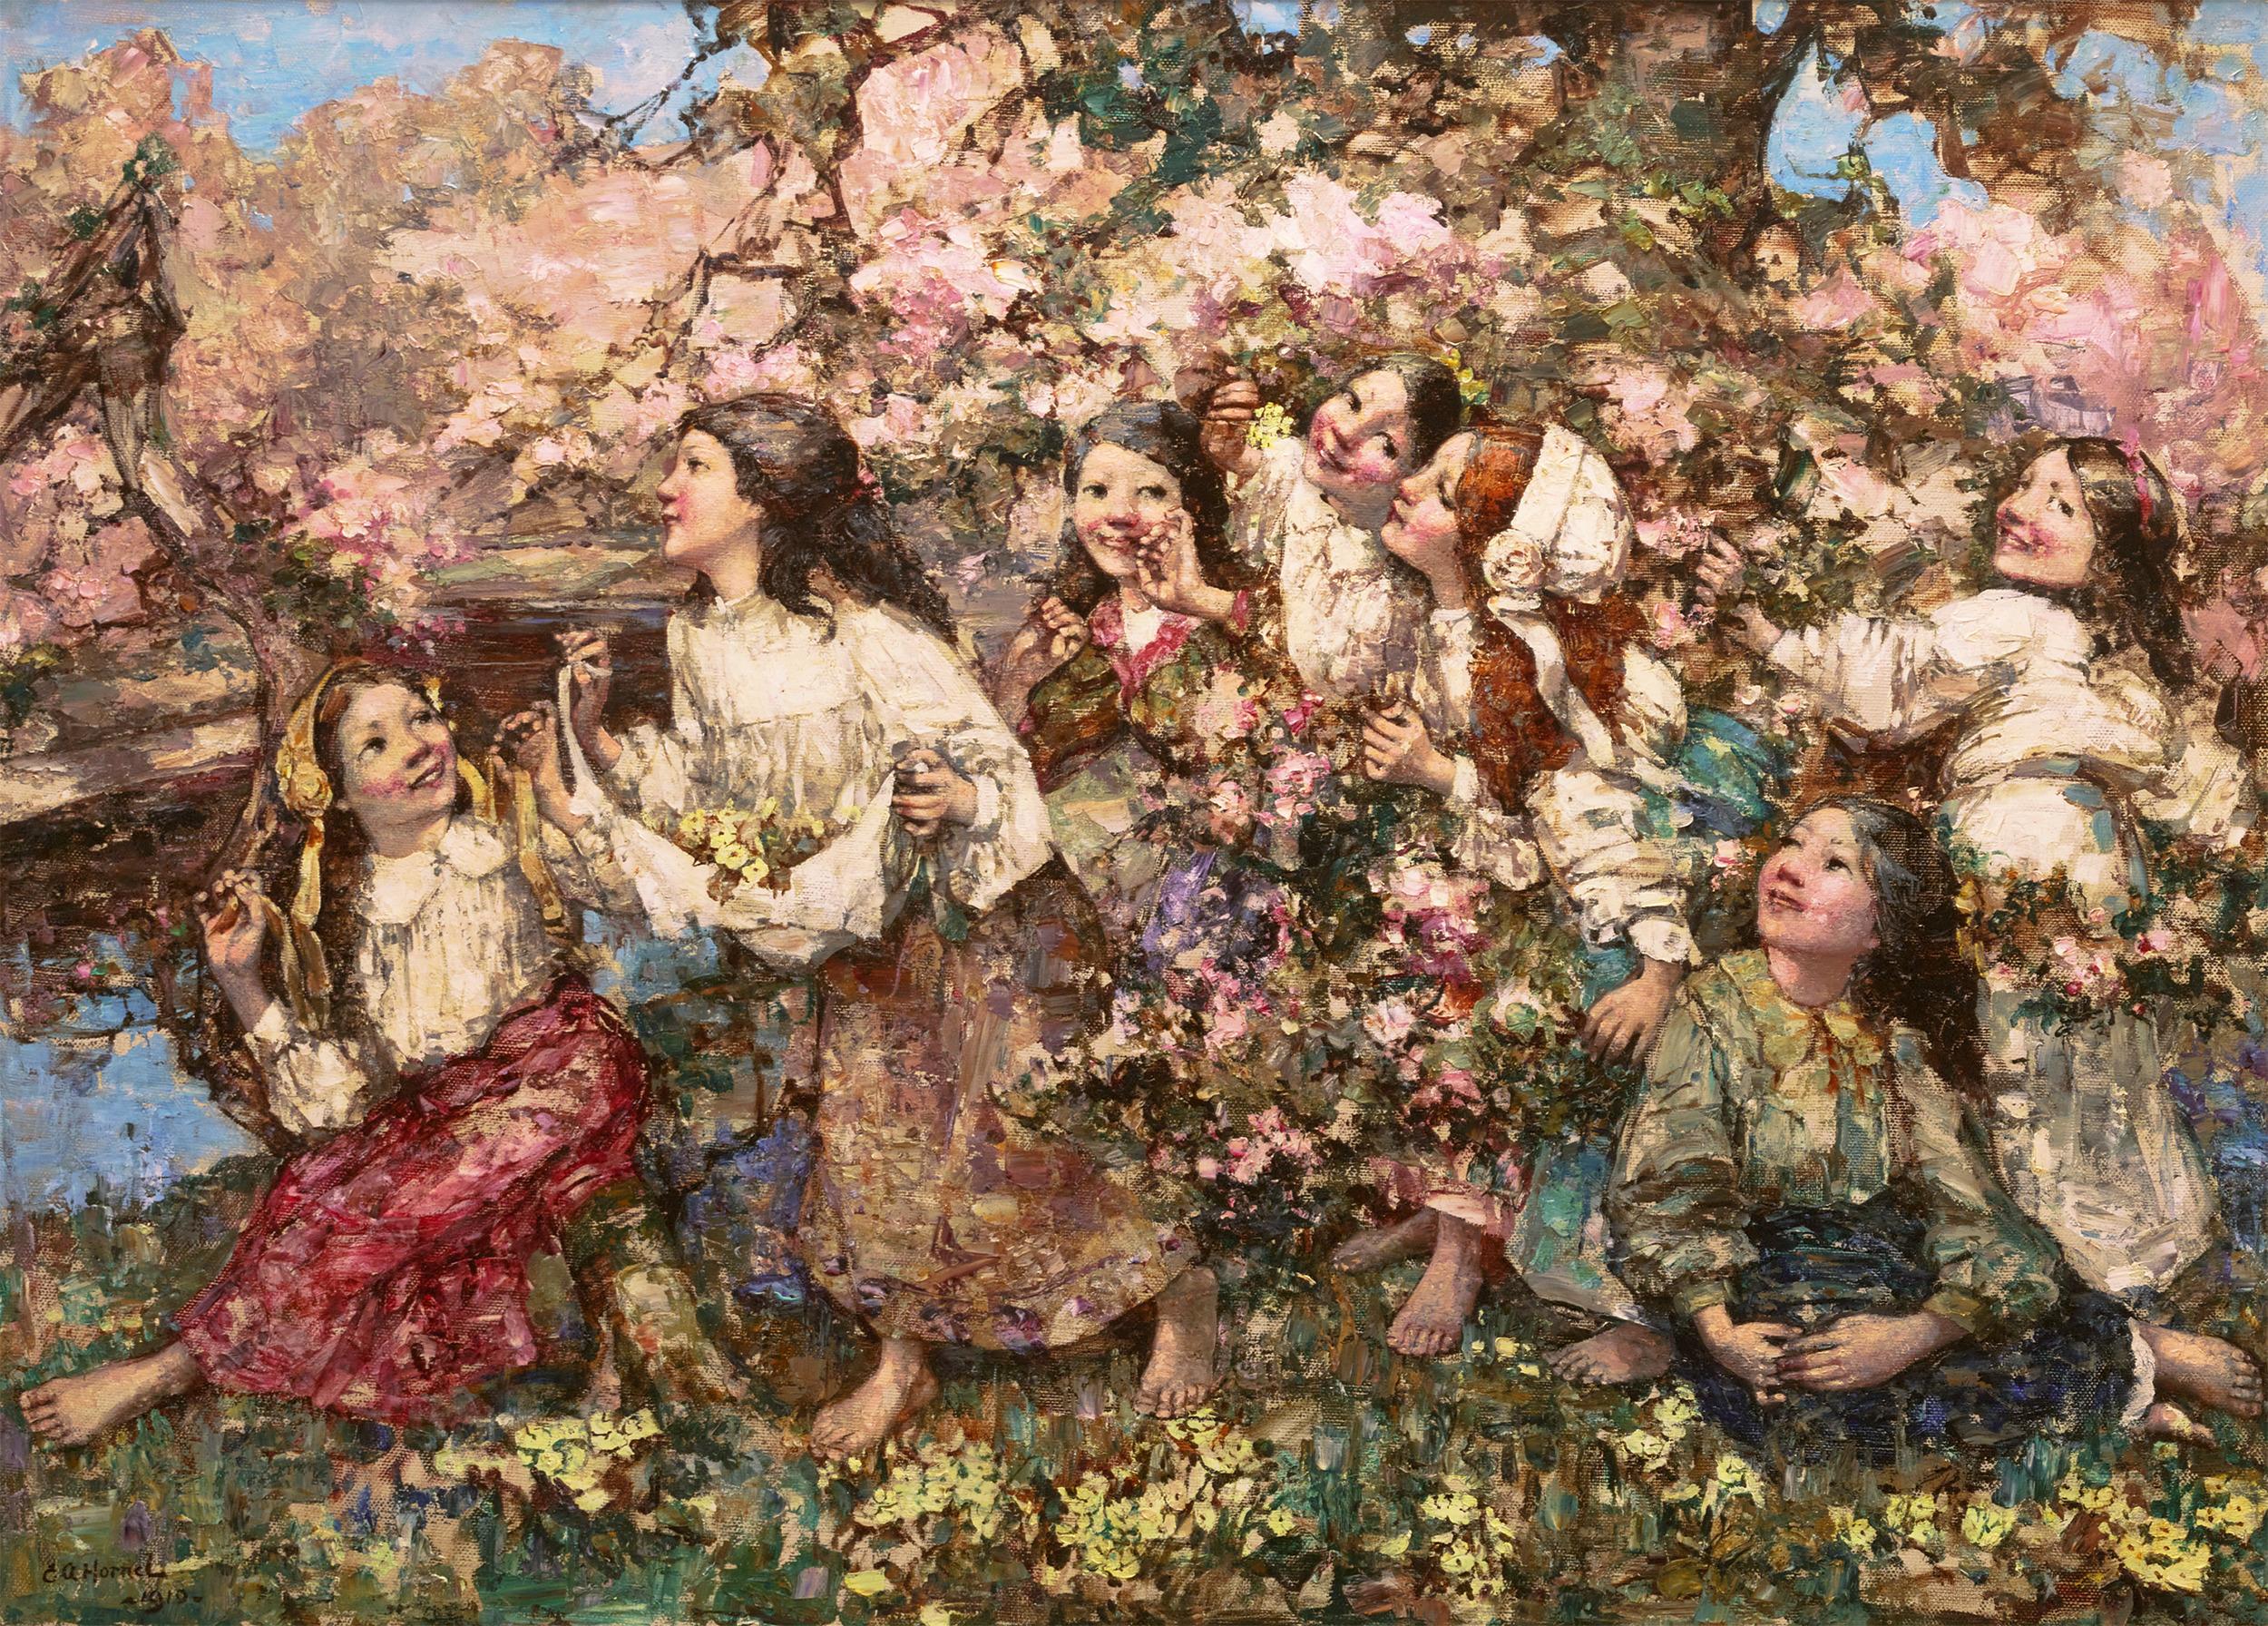 Edward Atkinson Hornel
1864-1933  Écosse

Un Roundelay de printemps

Signé "E A Hornel" et daté 1910 (en bas à gauche)
Huile sur toile

Visuellement saisissante avec les teintes vives du printemps, cette scène édifiante de sept jeunes filles